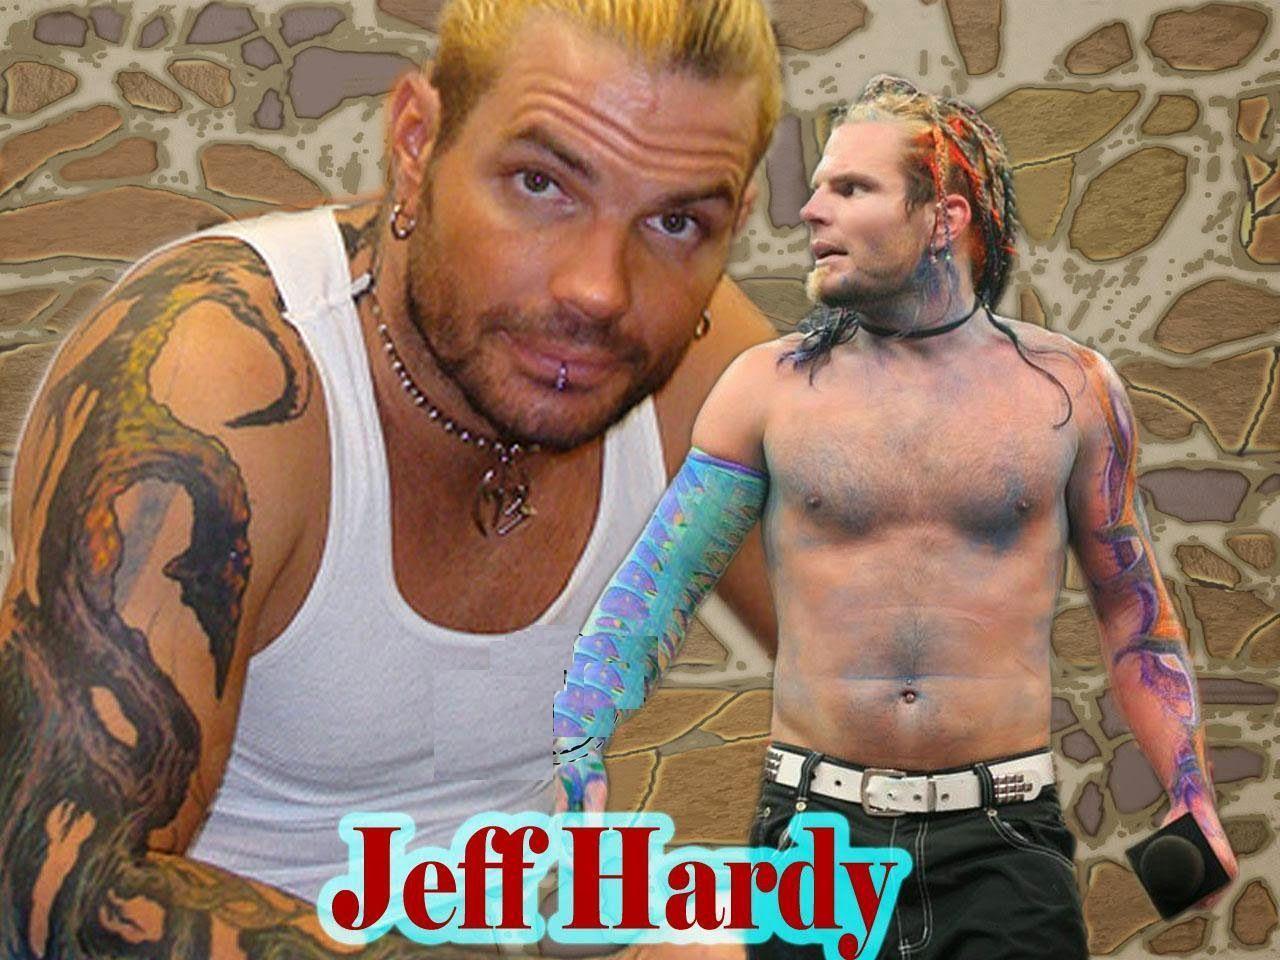 Jeff Hardy HD Wallpaper Free Download. WWE HD WALLPAPER FREE